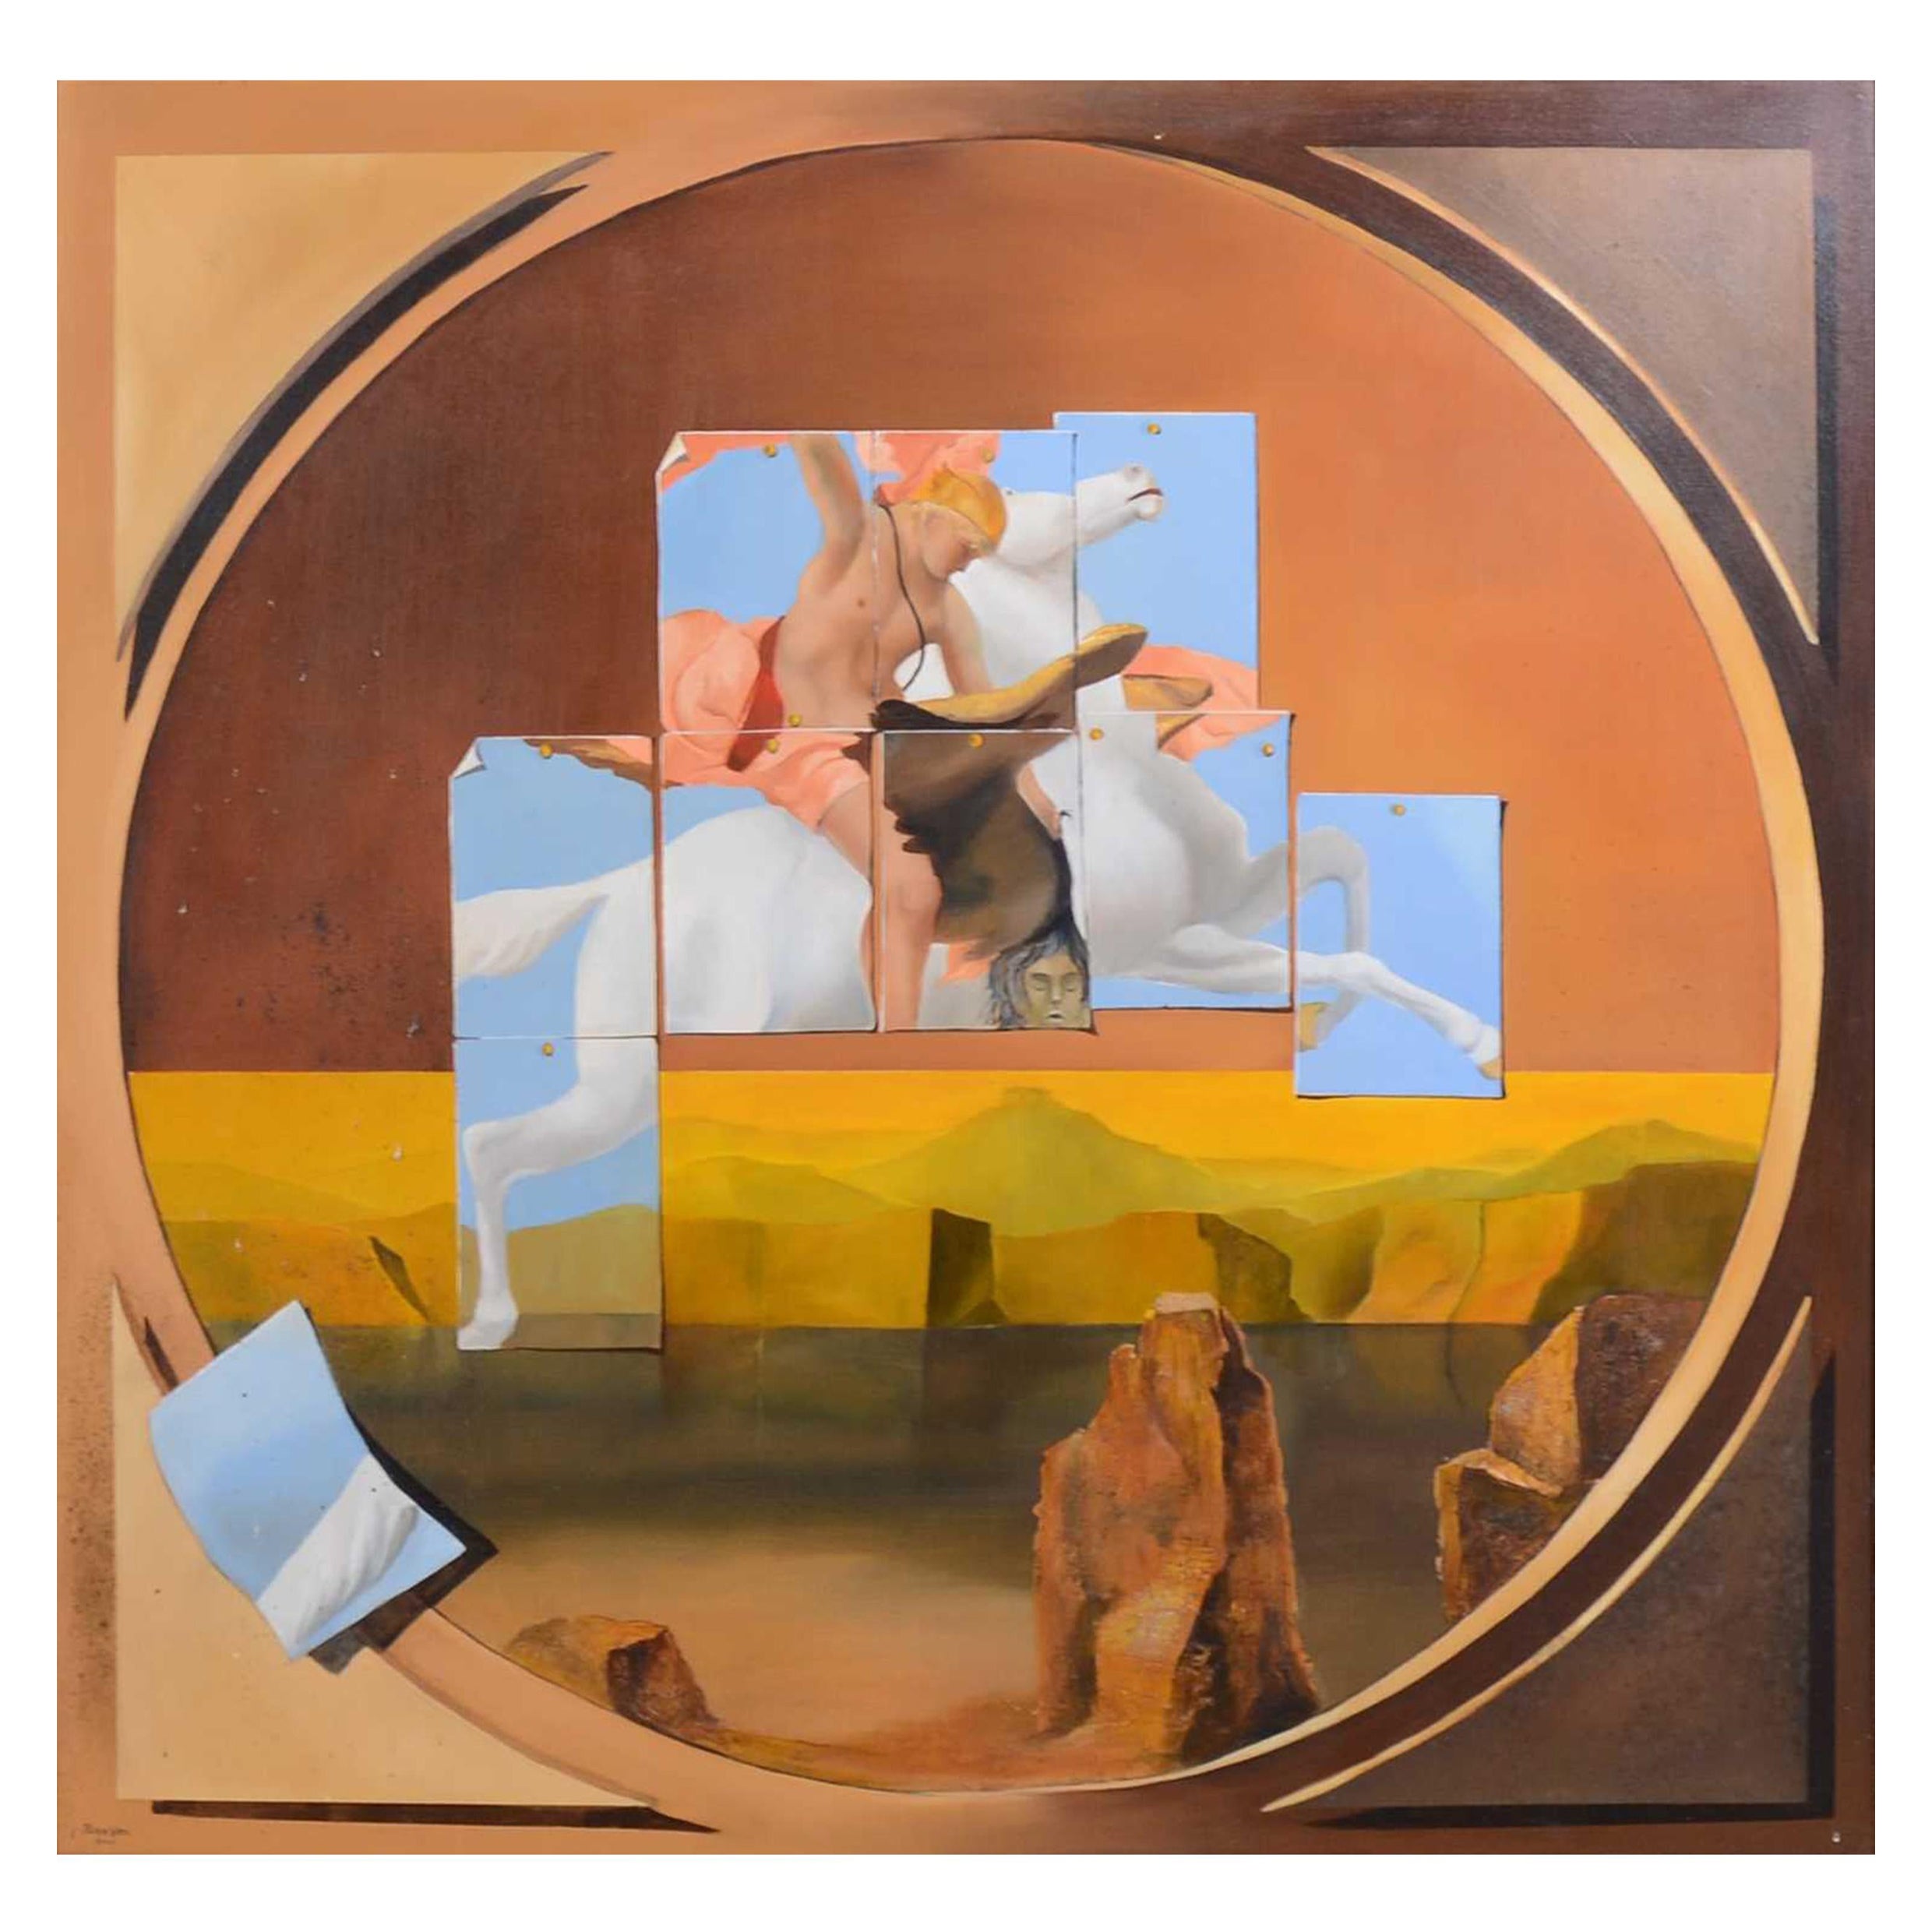 Œuvre d'art surréaliste à l'huile sur toile de l'artiste britannique John Voss incarnant le mythe en vente